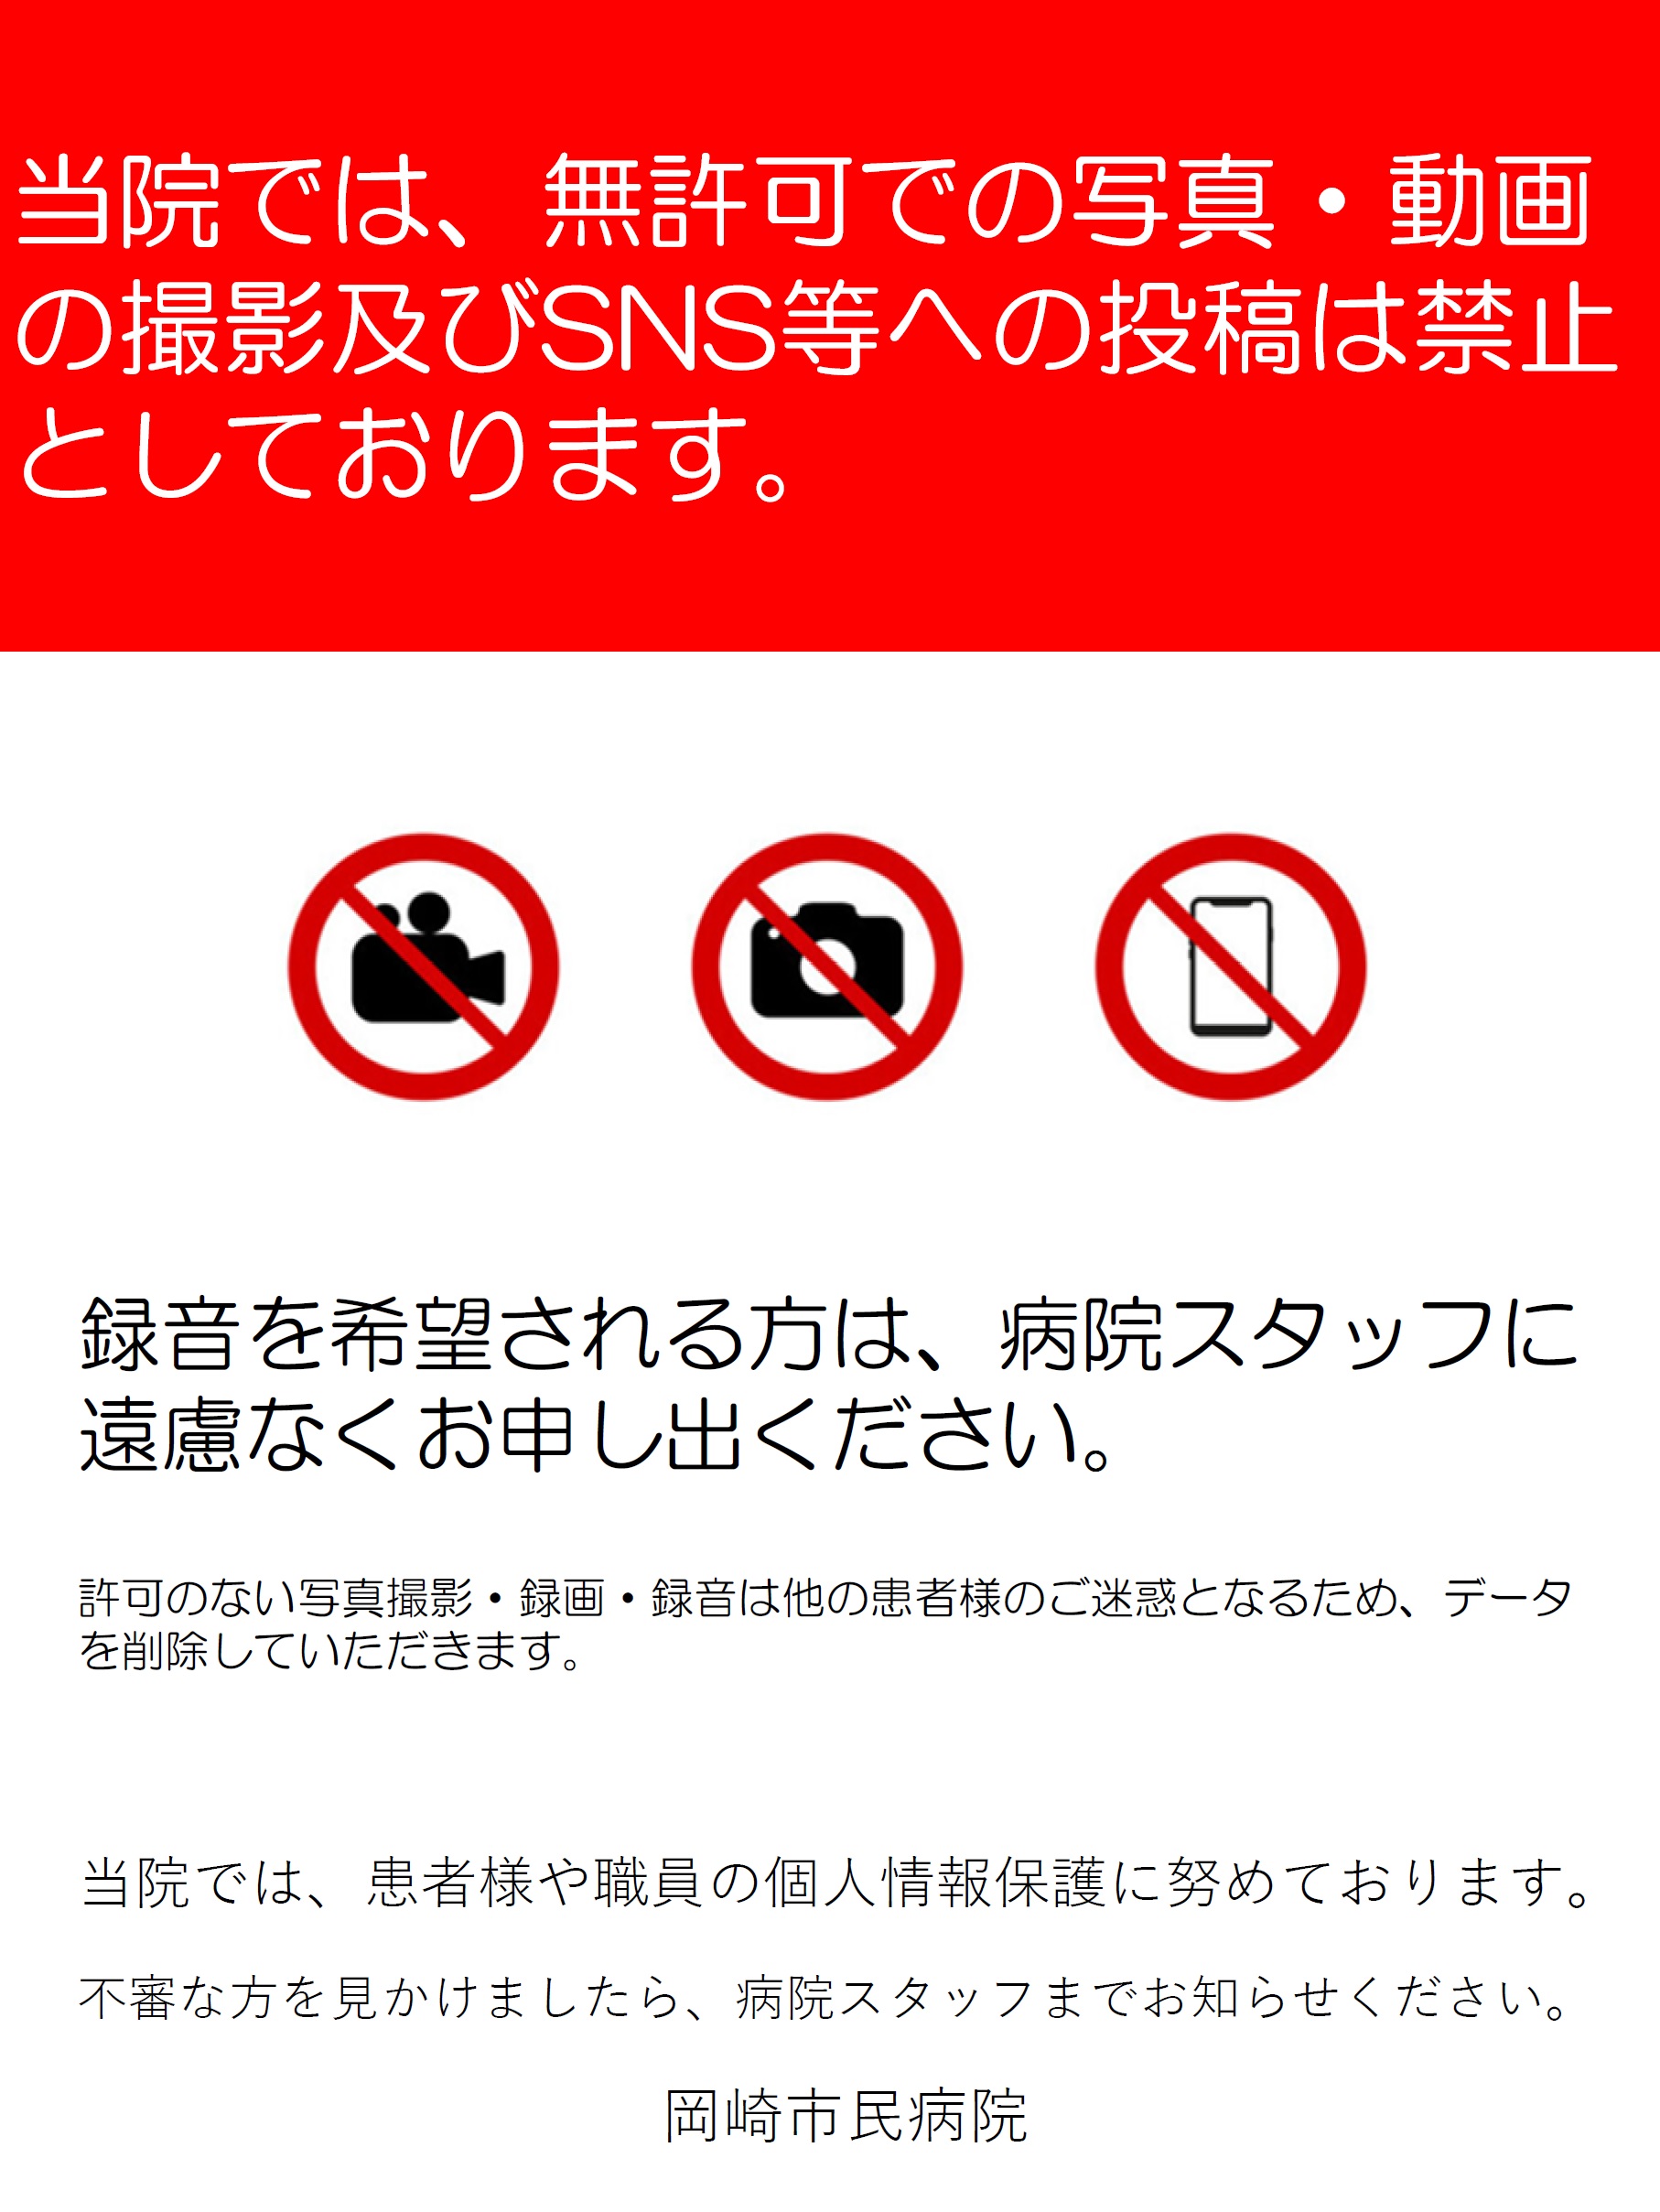 当院では、無許可での写真・動画の撮影及びSNS等への投稿は禁止としております。